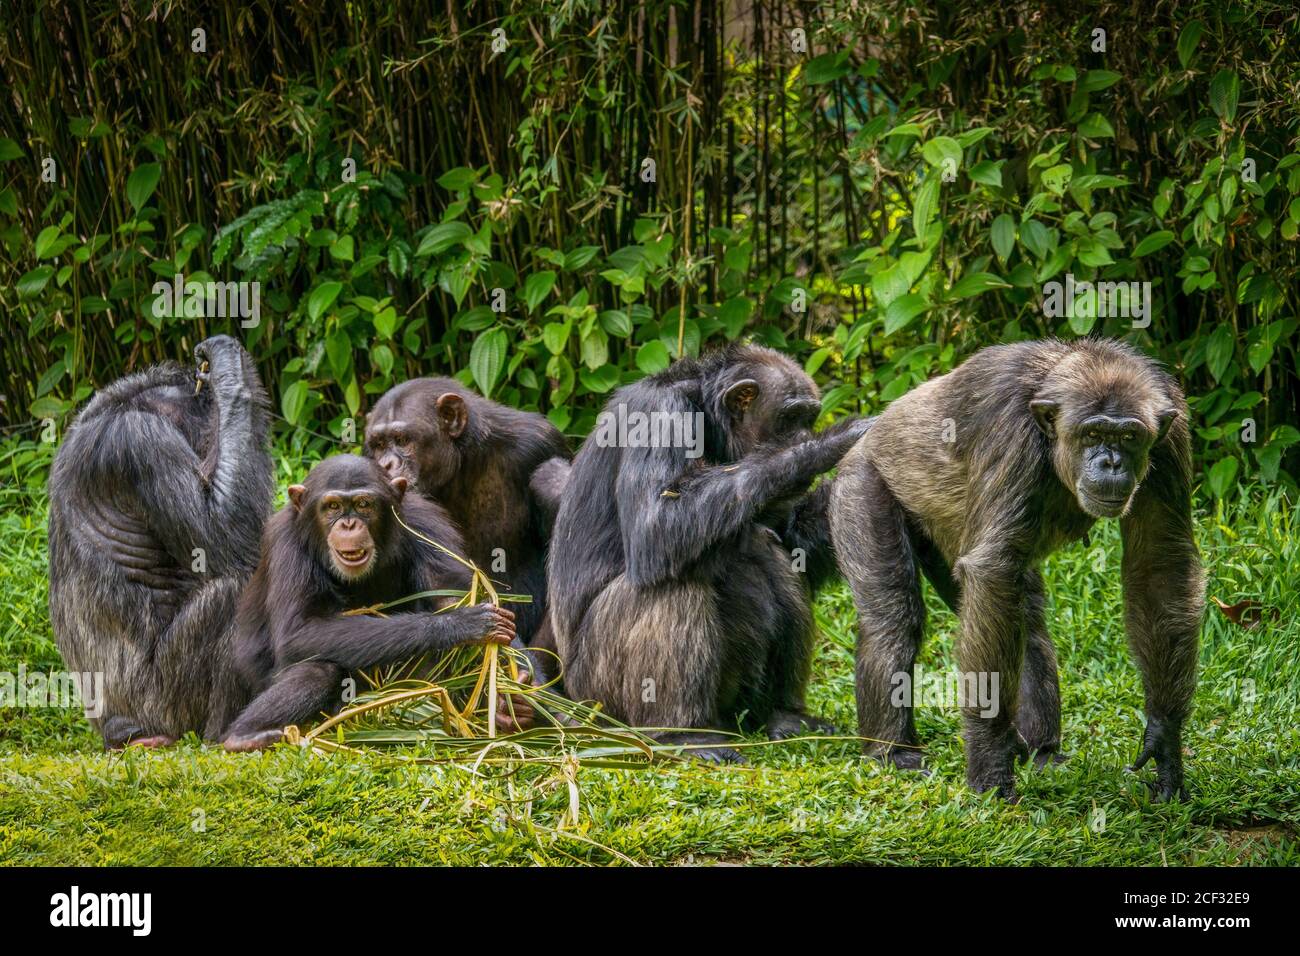 Interessante comportamento animale, con attenzione al maschio adulto scimpanzé a destra avere le sue natiche curata. Foto Stock